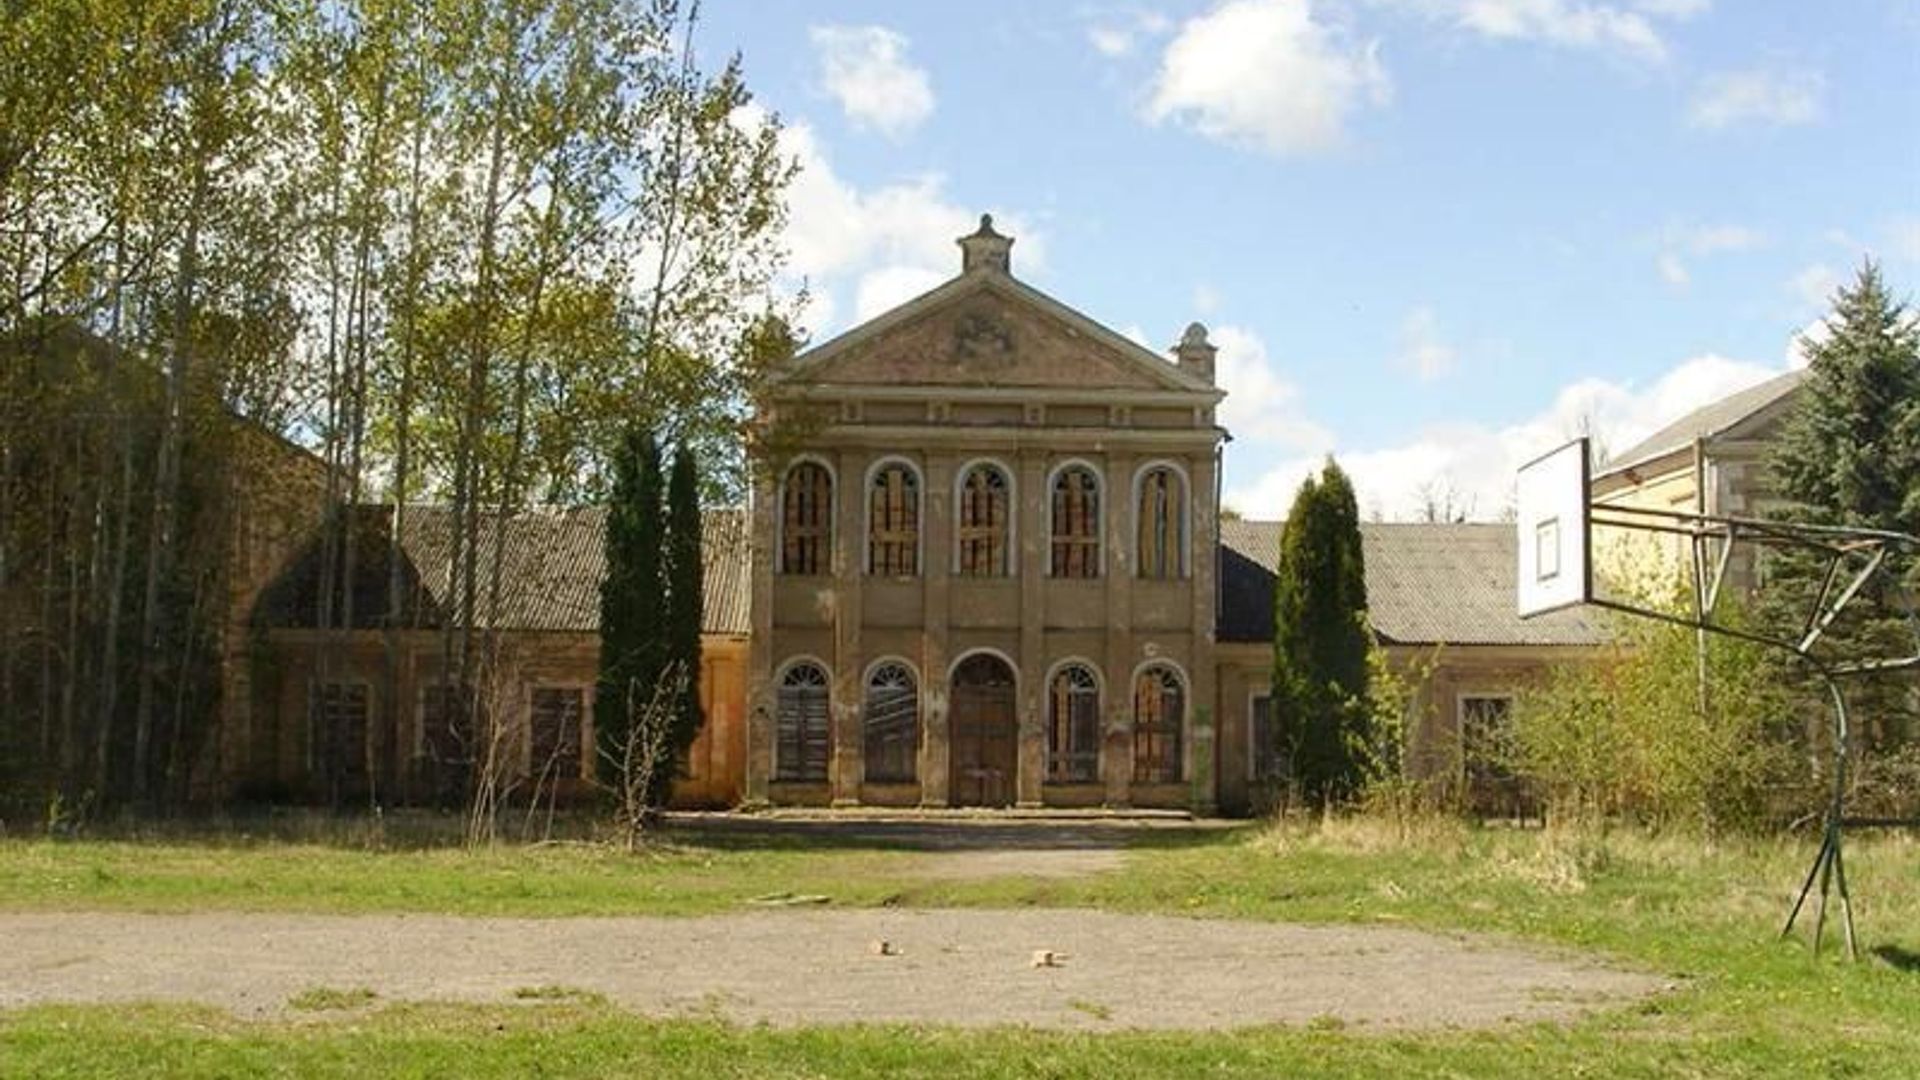 Panemunis Manor